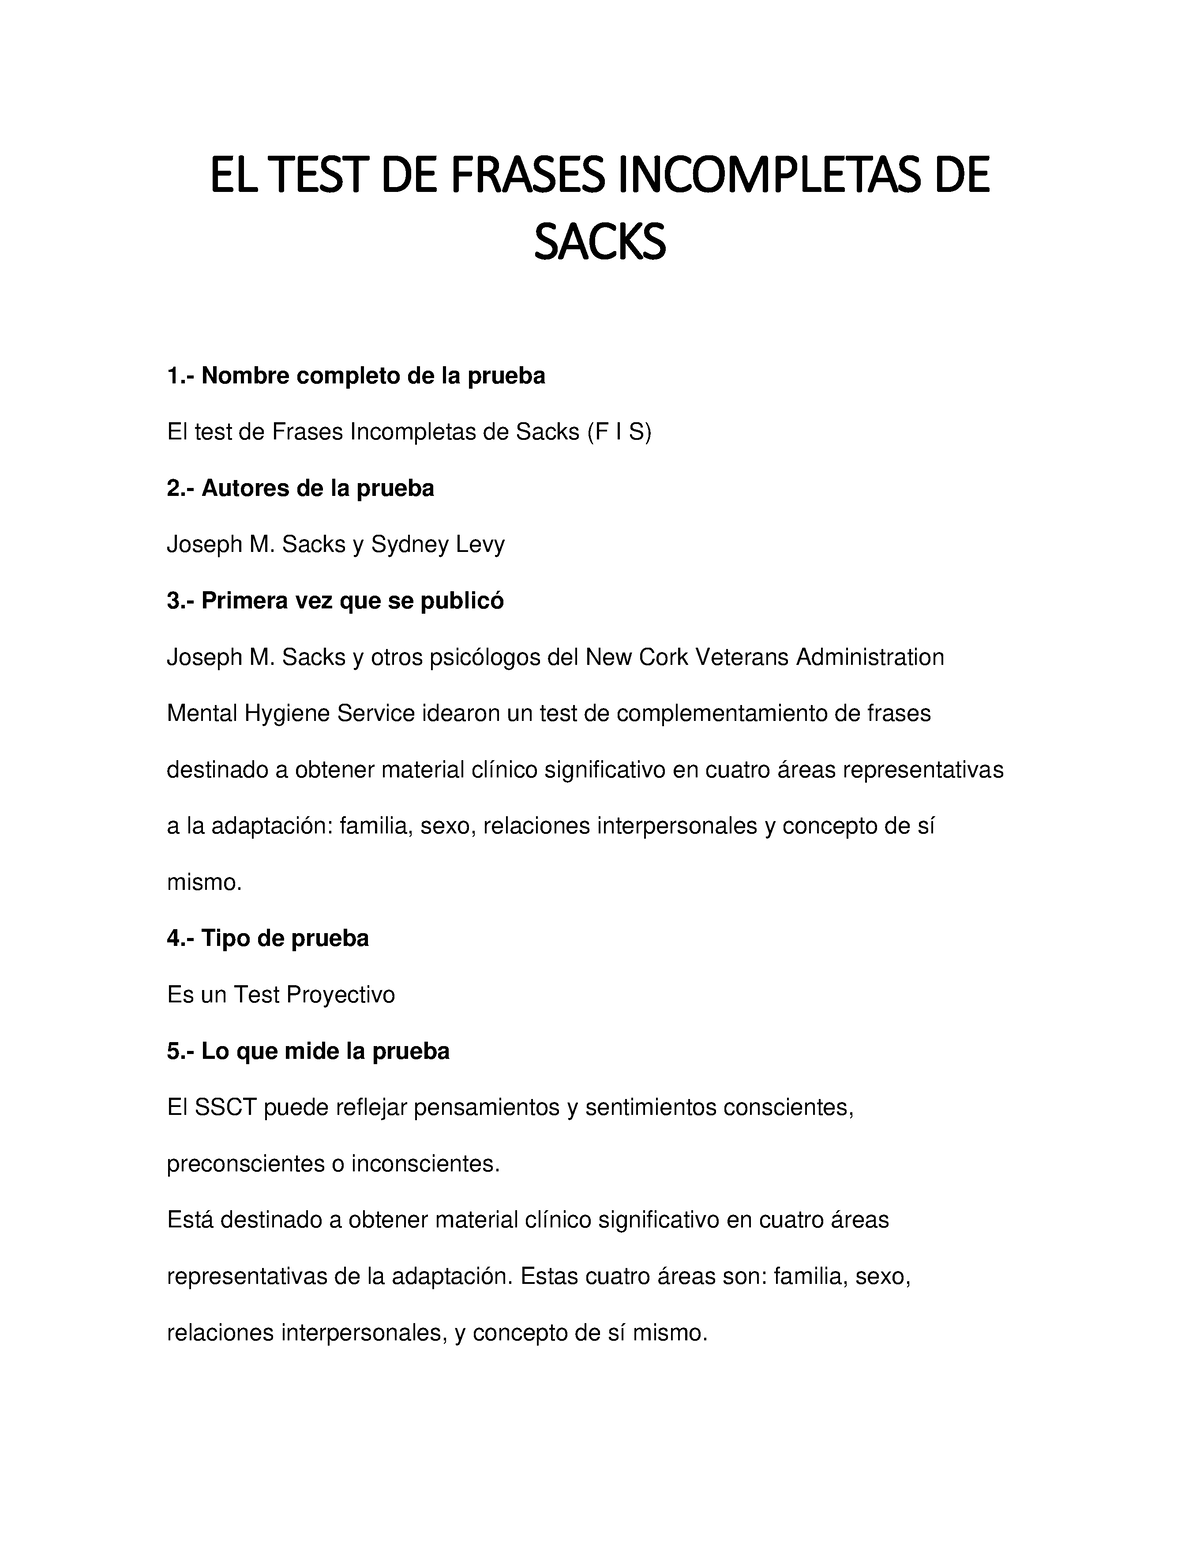 El Test de Frases Incompletas - Sacks - EL TEST DE FRASES INCOMPLETAS DE  SACKS  Nombre completo - Studocu